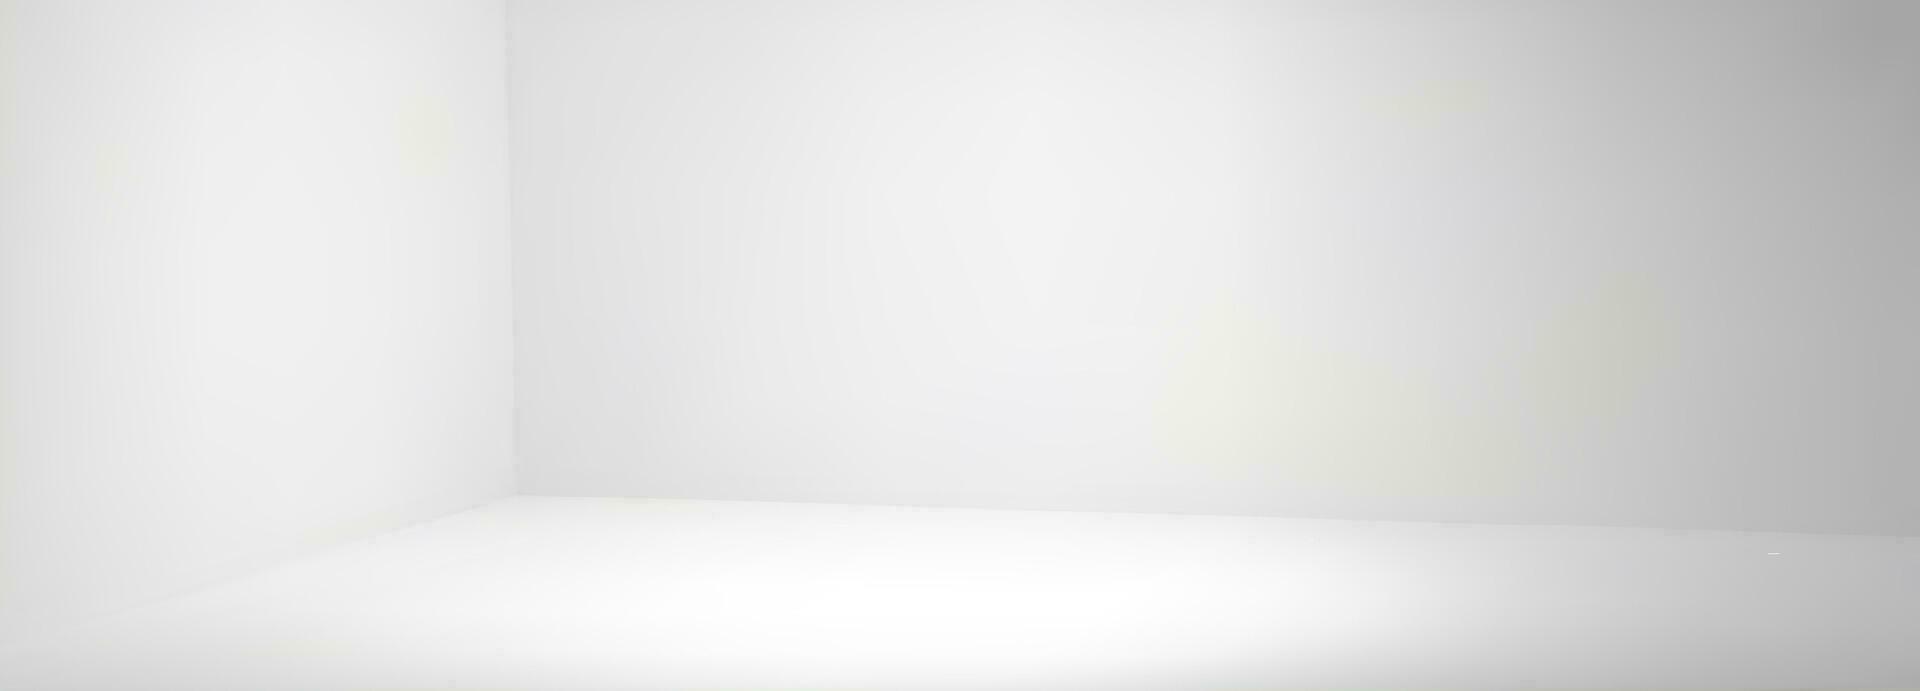 leeg wit hoek kamer met muur in studio 3d vector achtergrond. schoon interieur perspectief visie hal mockup voor presentatie of tentoonstelling illustratie. realistisch foto schieten Oppervlakte met licht